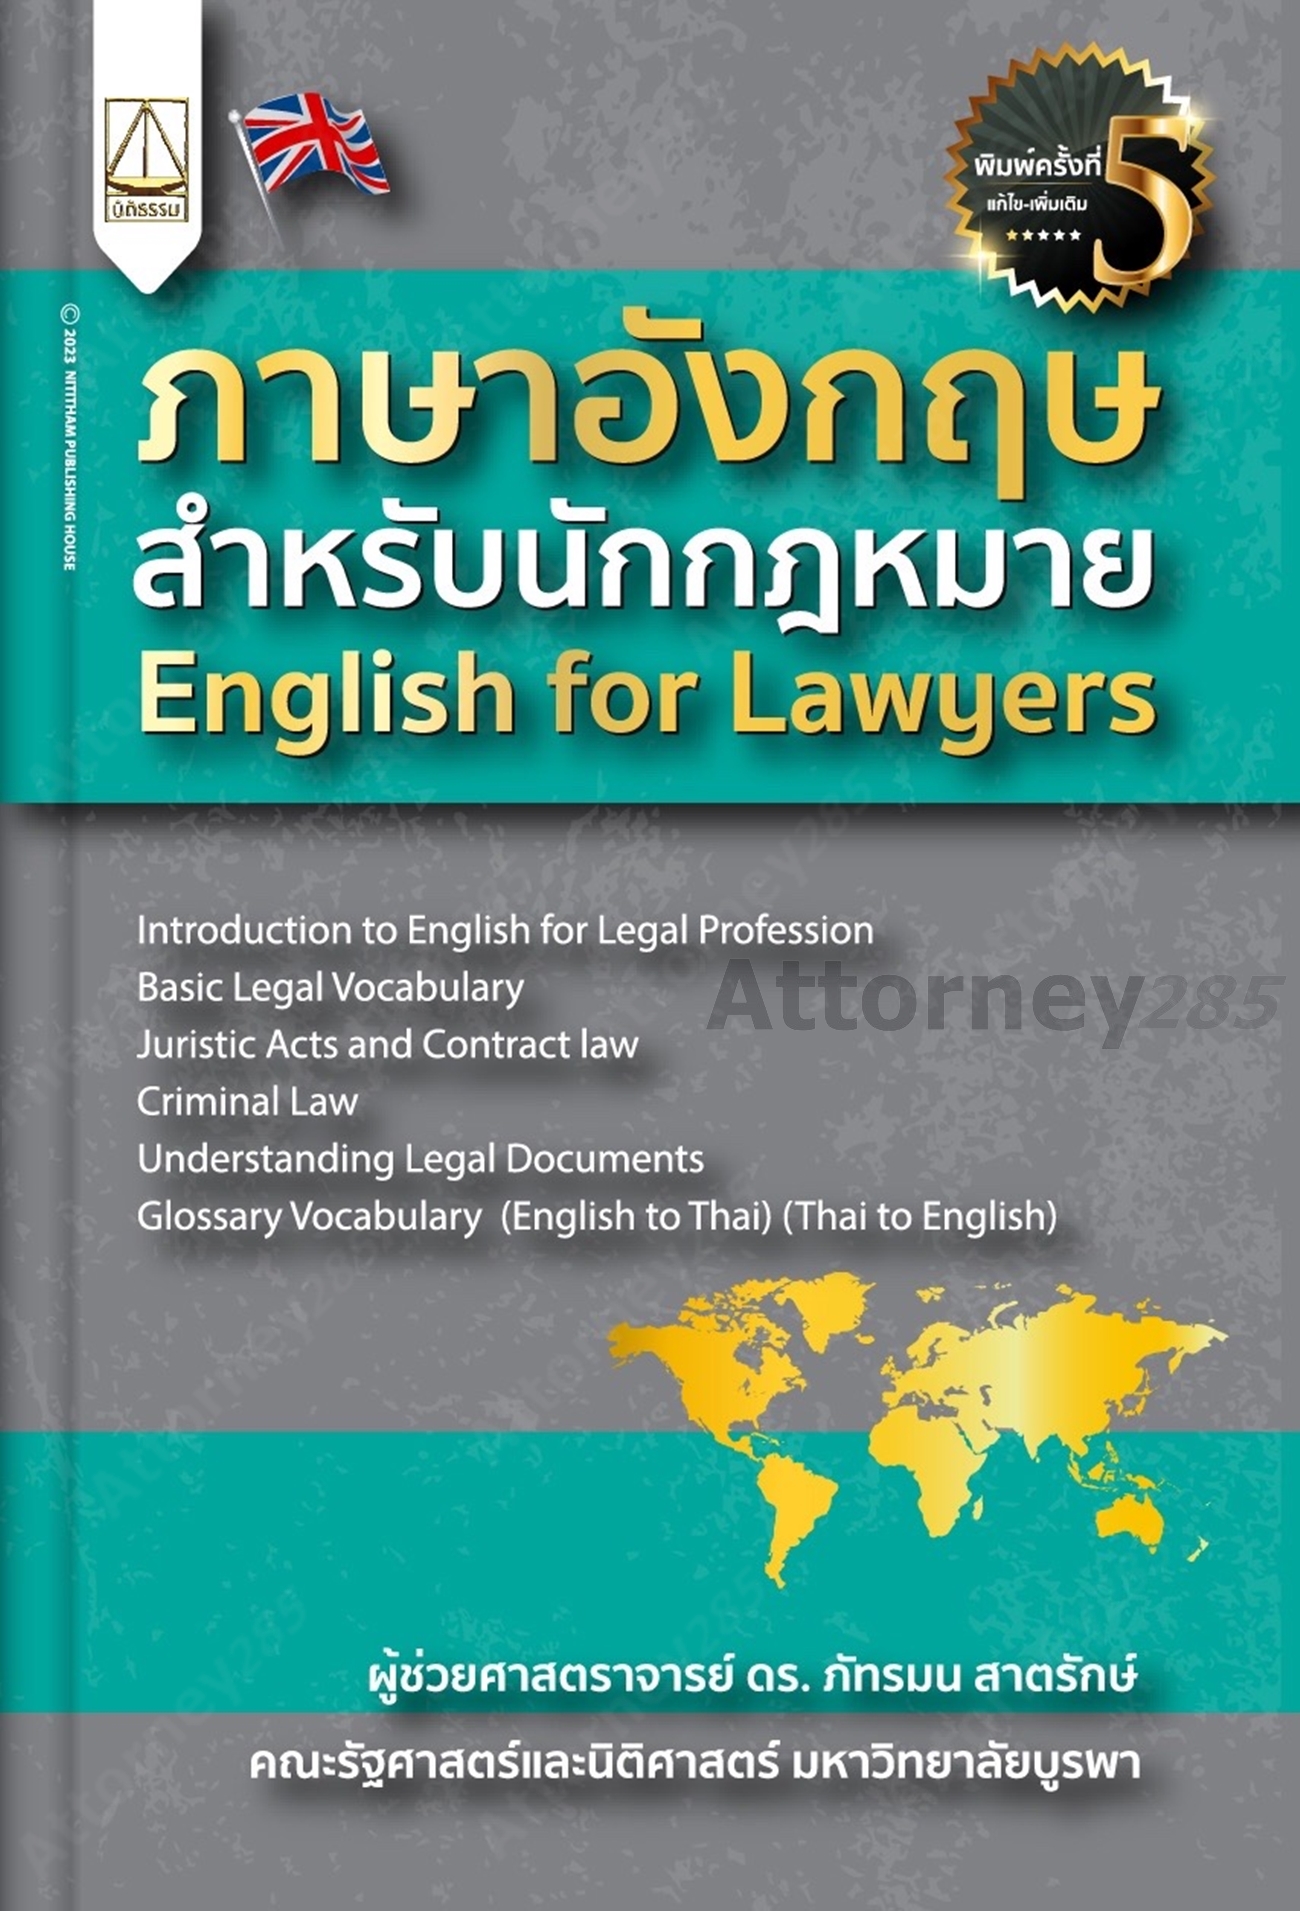 ภาษาอังกฤษสำหรับนักกฎหมาย English For Lawyers ภัทรมน สาตรักษ์ - ร้าน  Attorney285 จำหน่ายหนังสือกฎหมาย หนังสือเรียนทุกระดับ หนังสือเด็ก  หนังสือพัฒนาตนเอง ร้านหนังสือ Attorney285 หนังสือกฎหมาย  หนังสือเรียนทุกระดับ ฮาวทู มีหน้าร้านเปิดขายทุกวัน